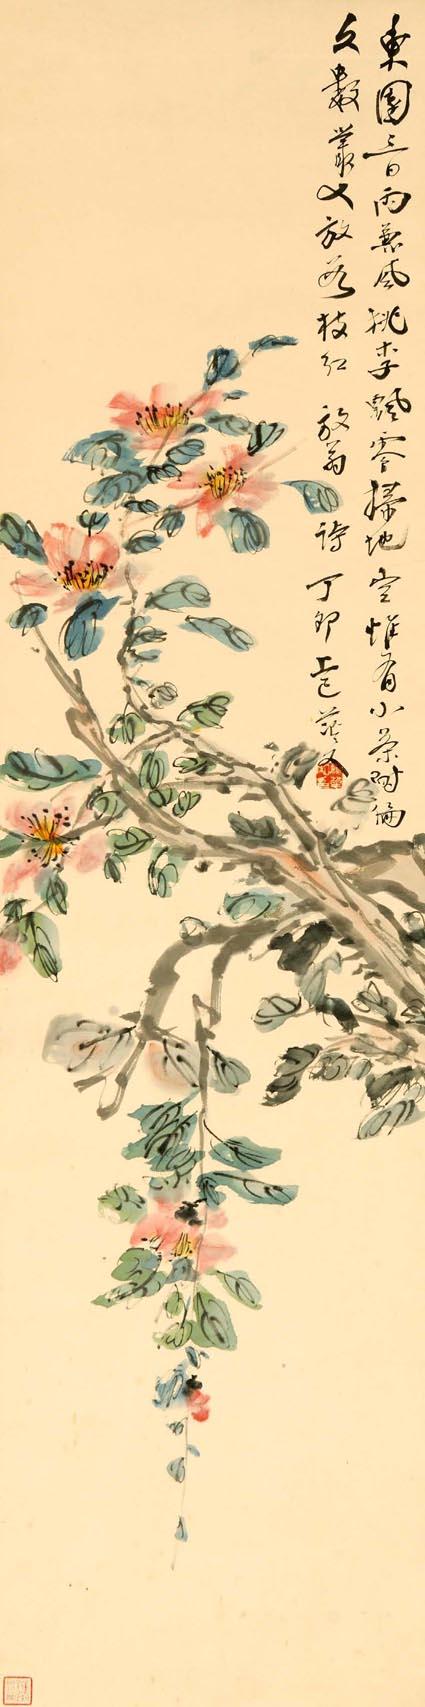 から厳選した 『百華詩箋譜』植物画 中国画 | temporada.studio